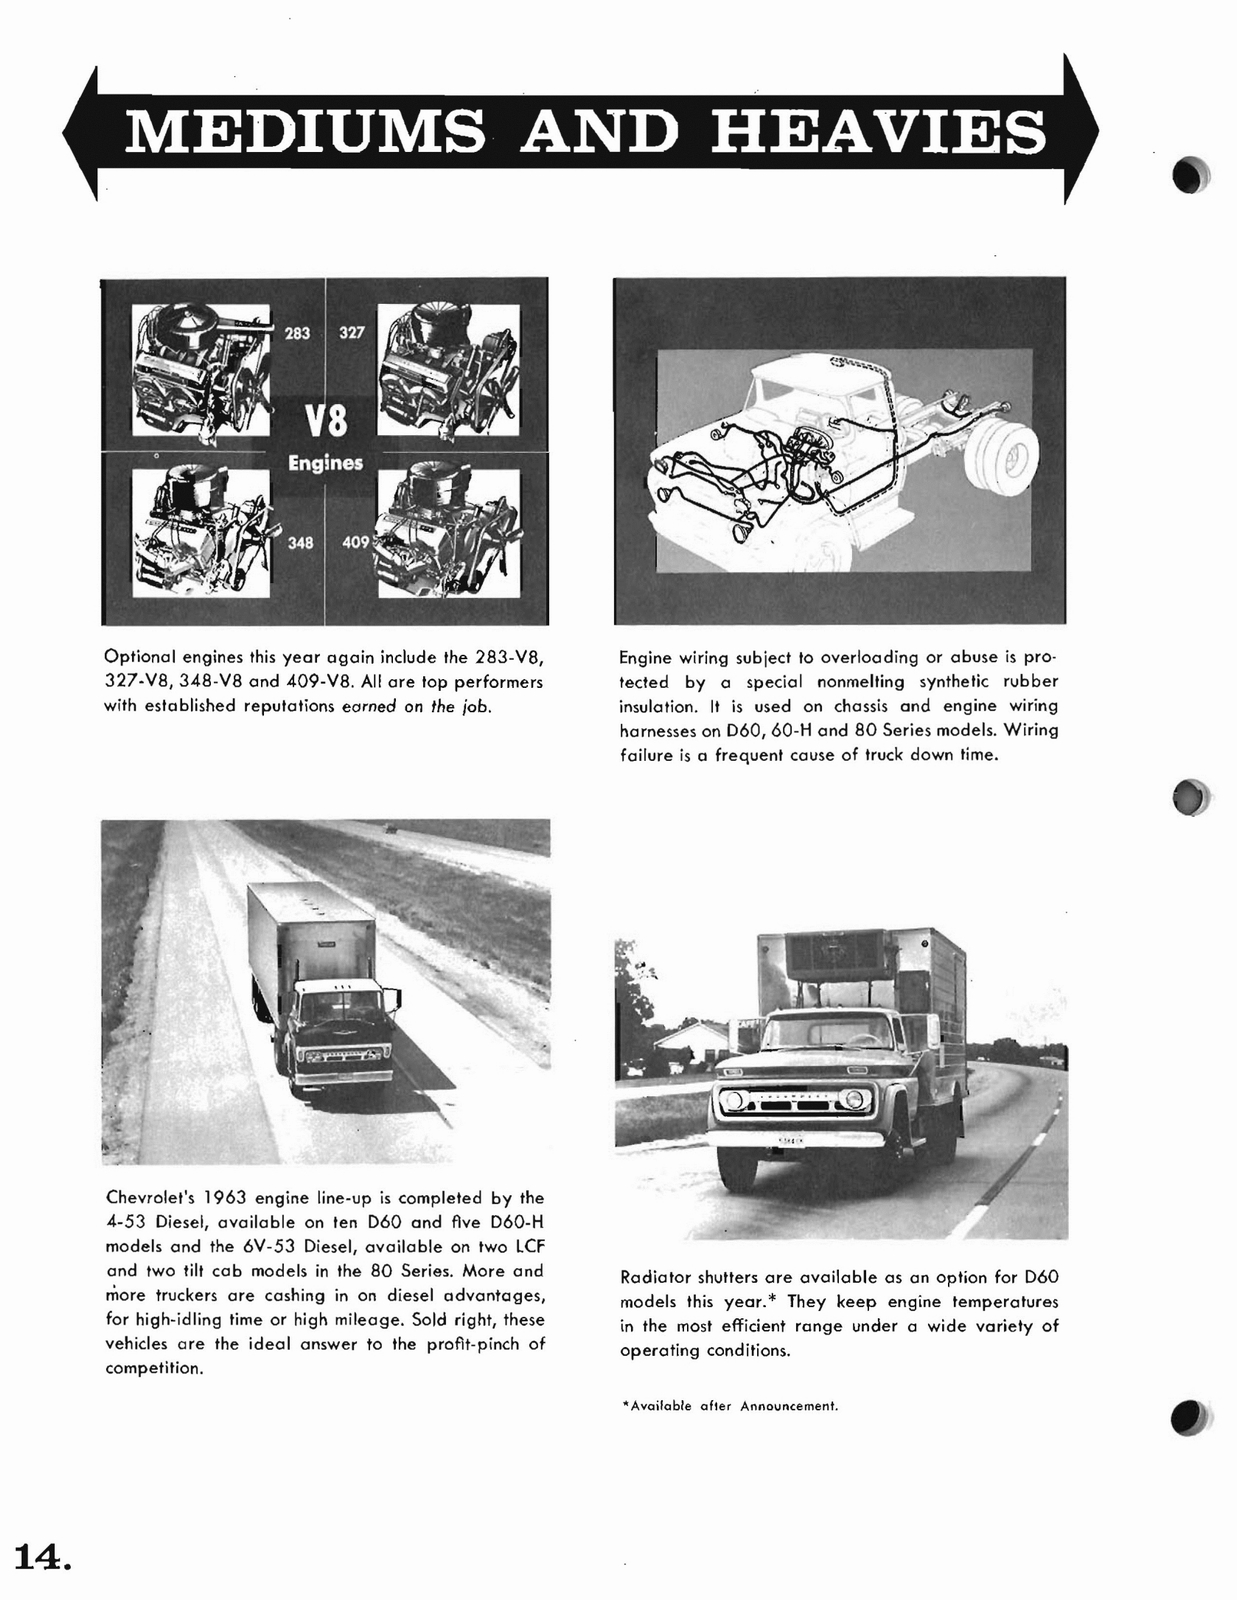 n_1963 Chevrolet Trucks Booklet-14.jpg